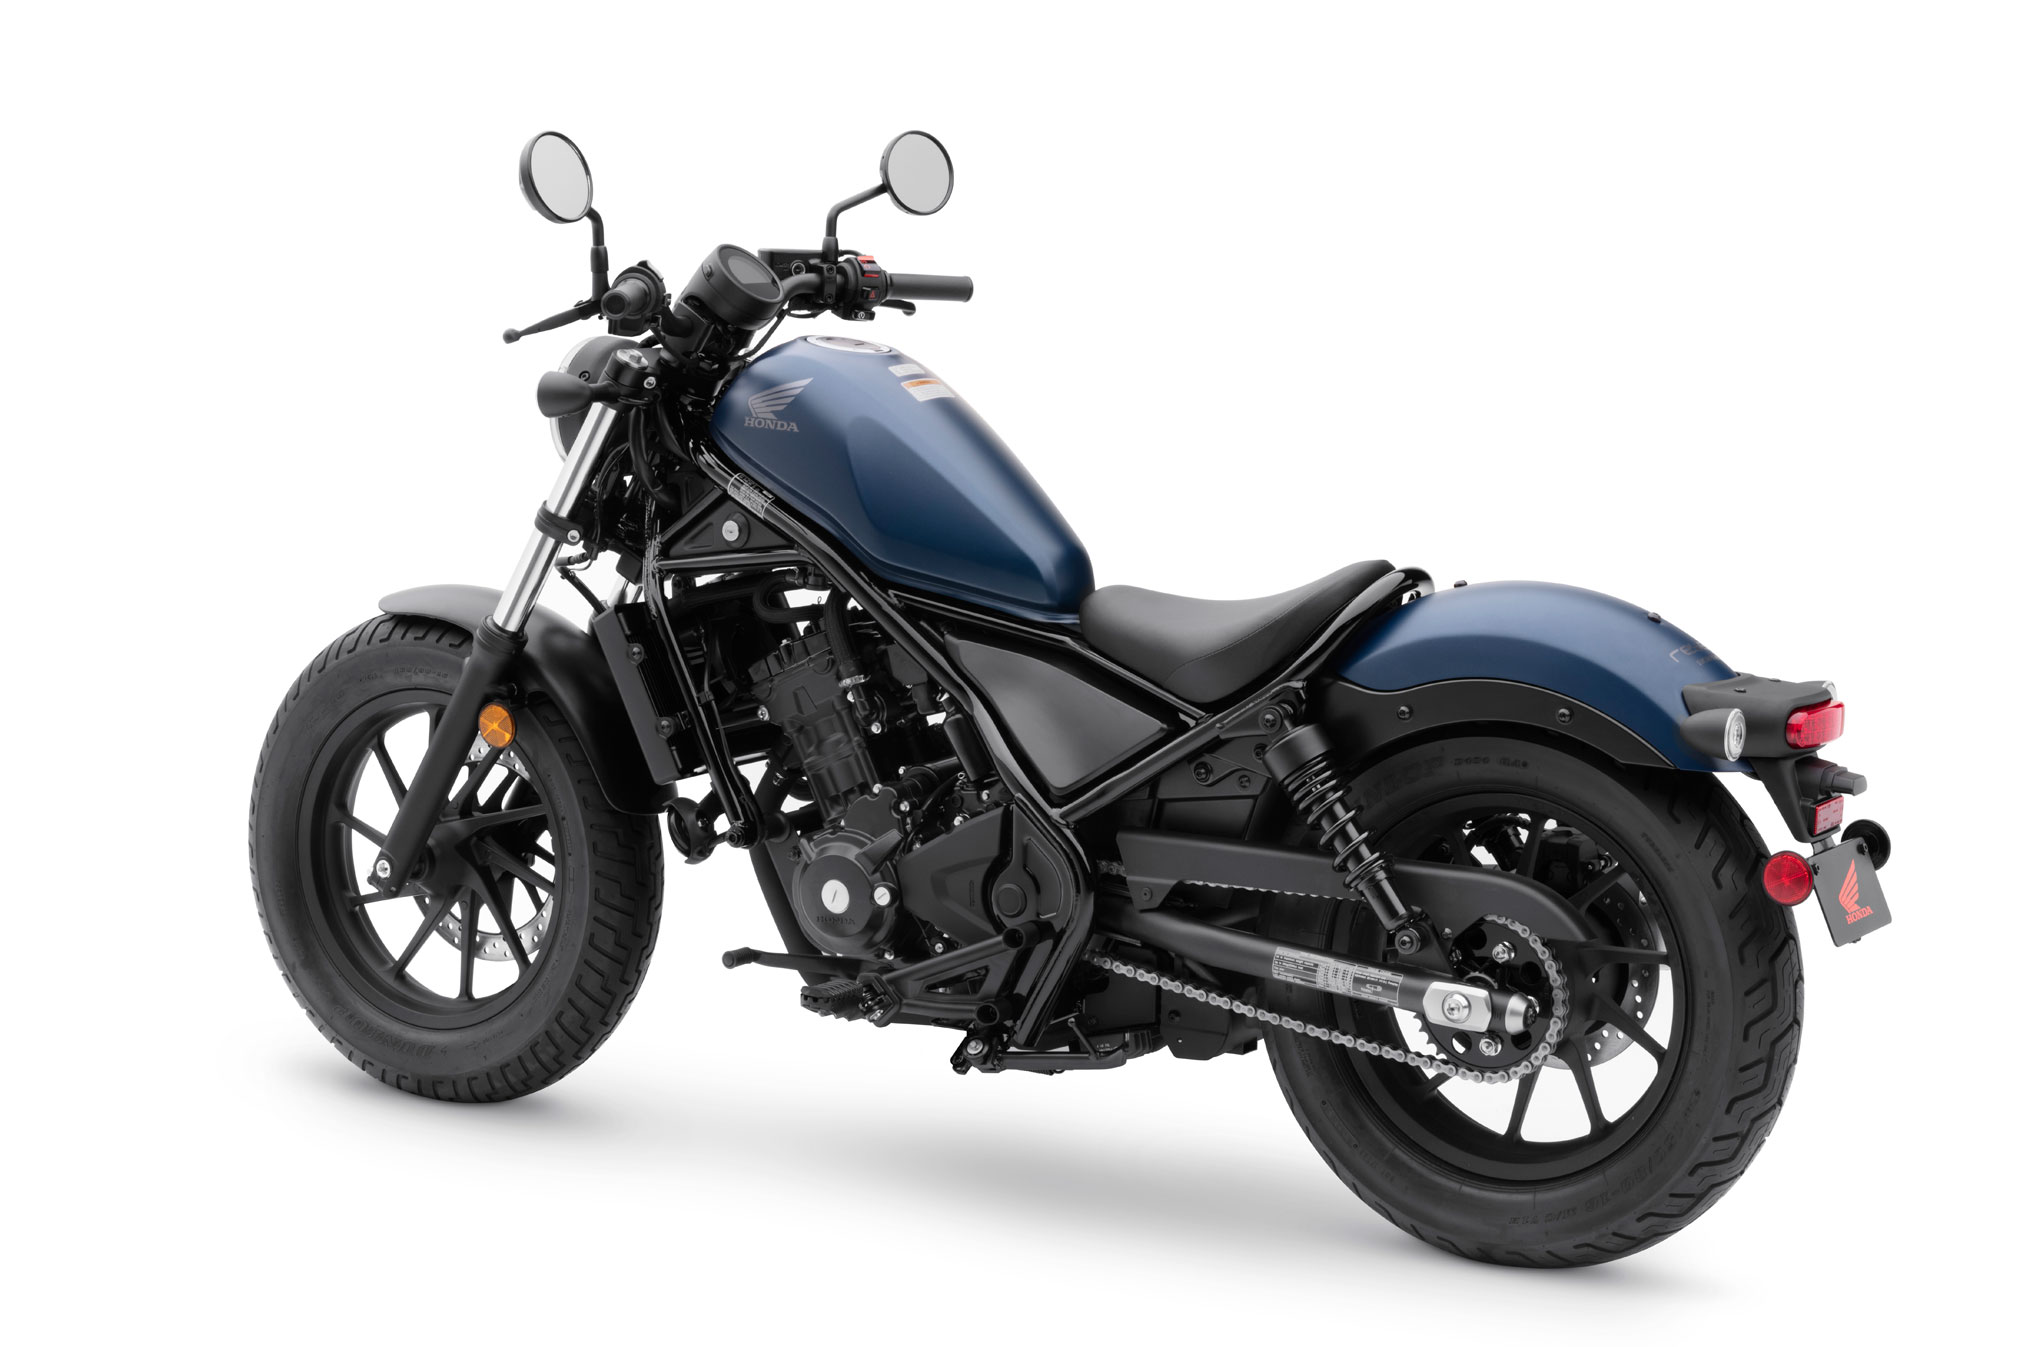 2020 Honda Rebel 300 ABS Guide • Total Motorcycle